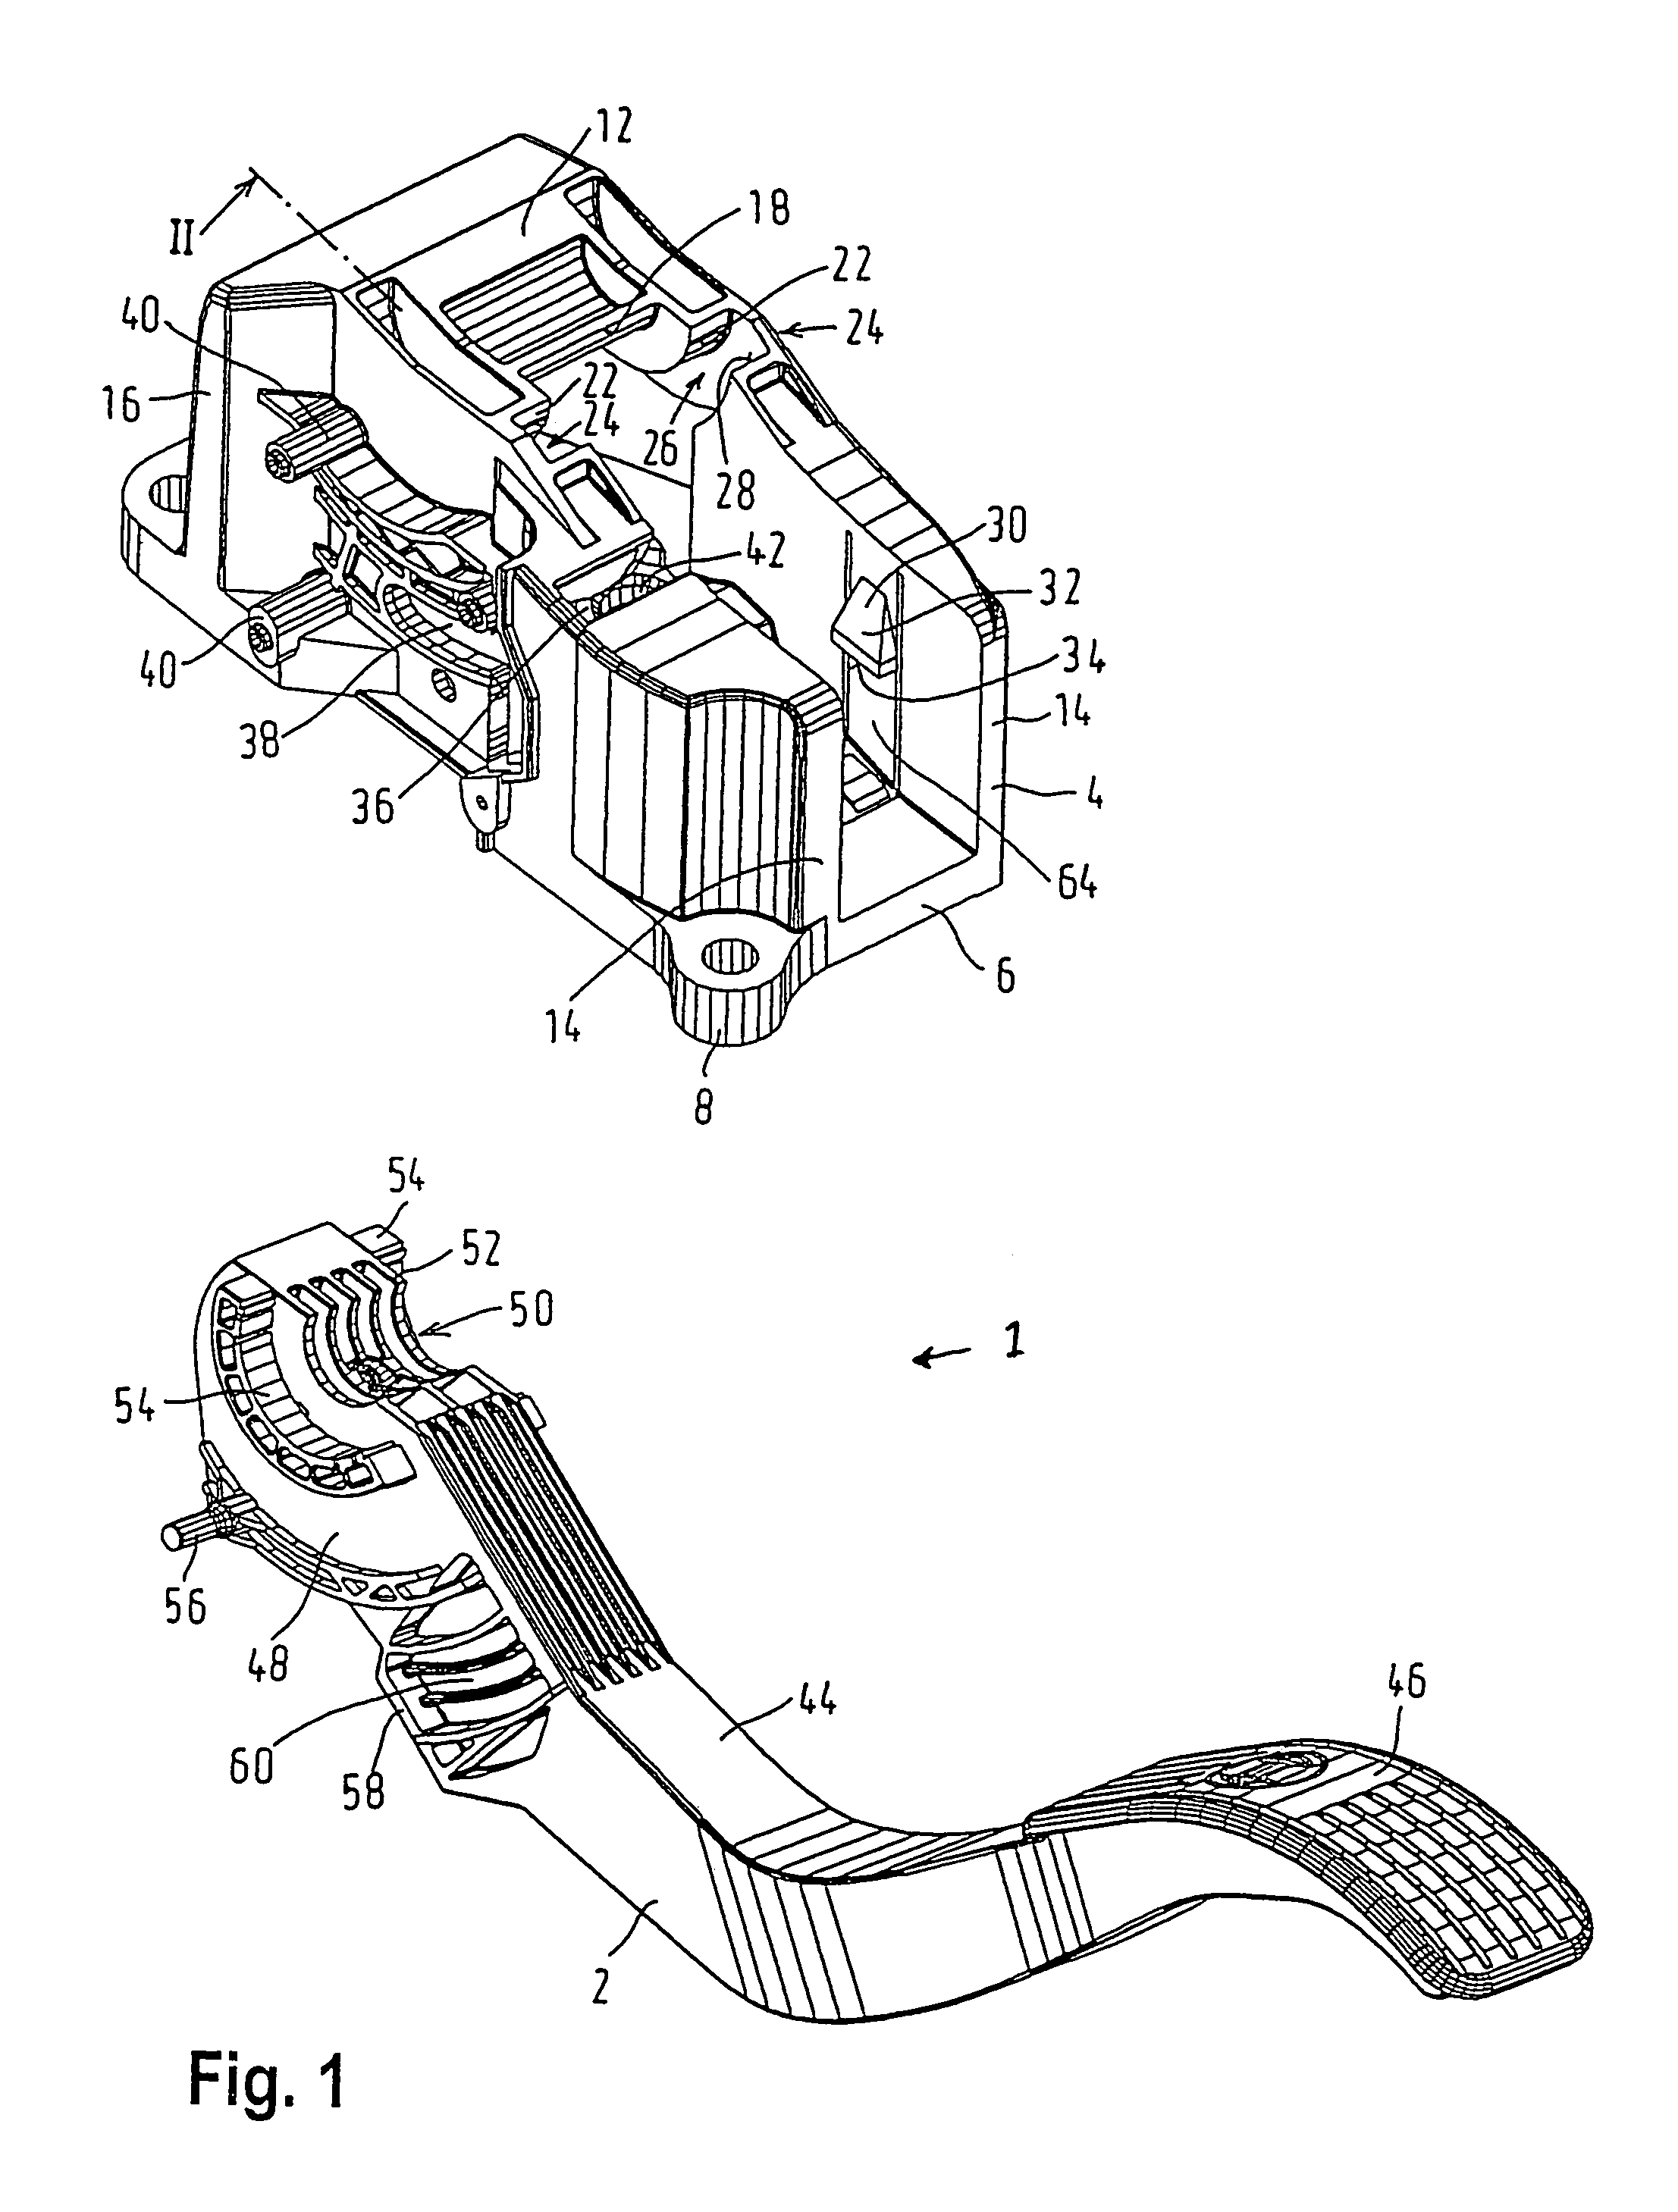 Accelerator pedal module